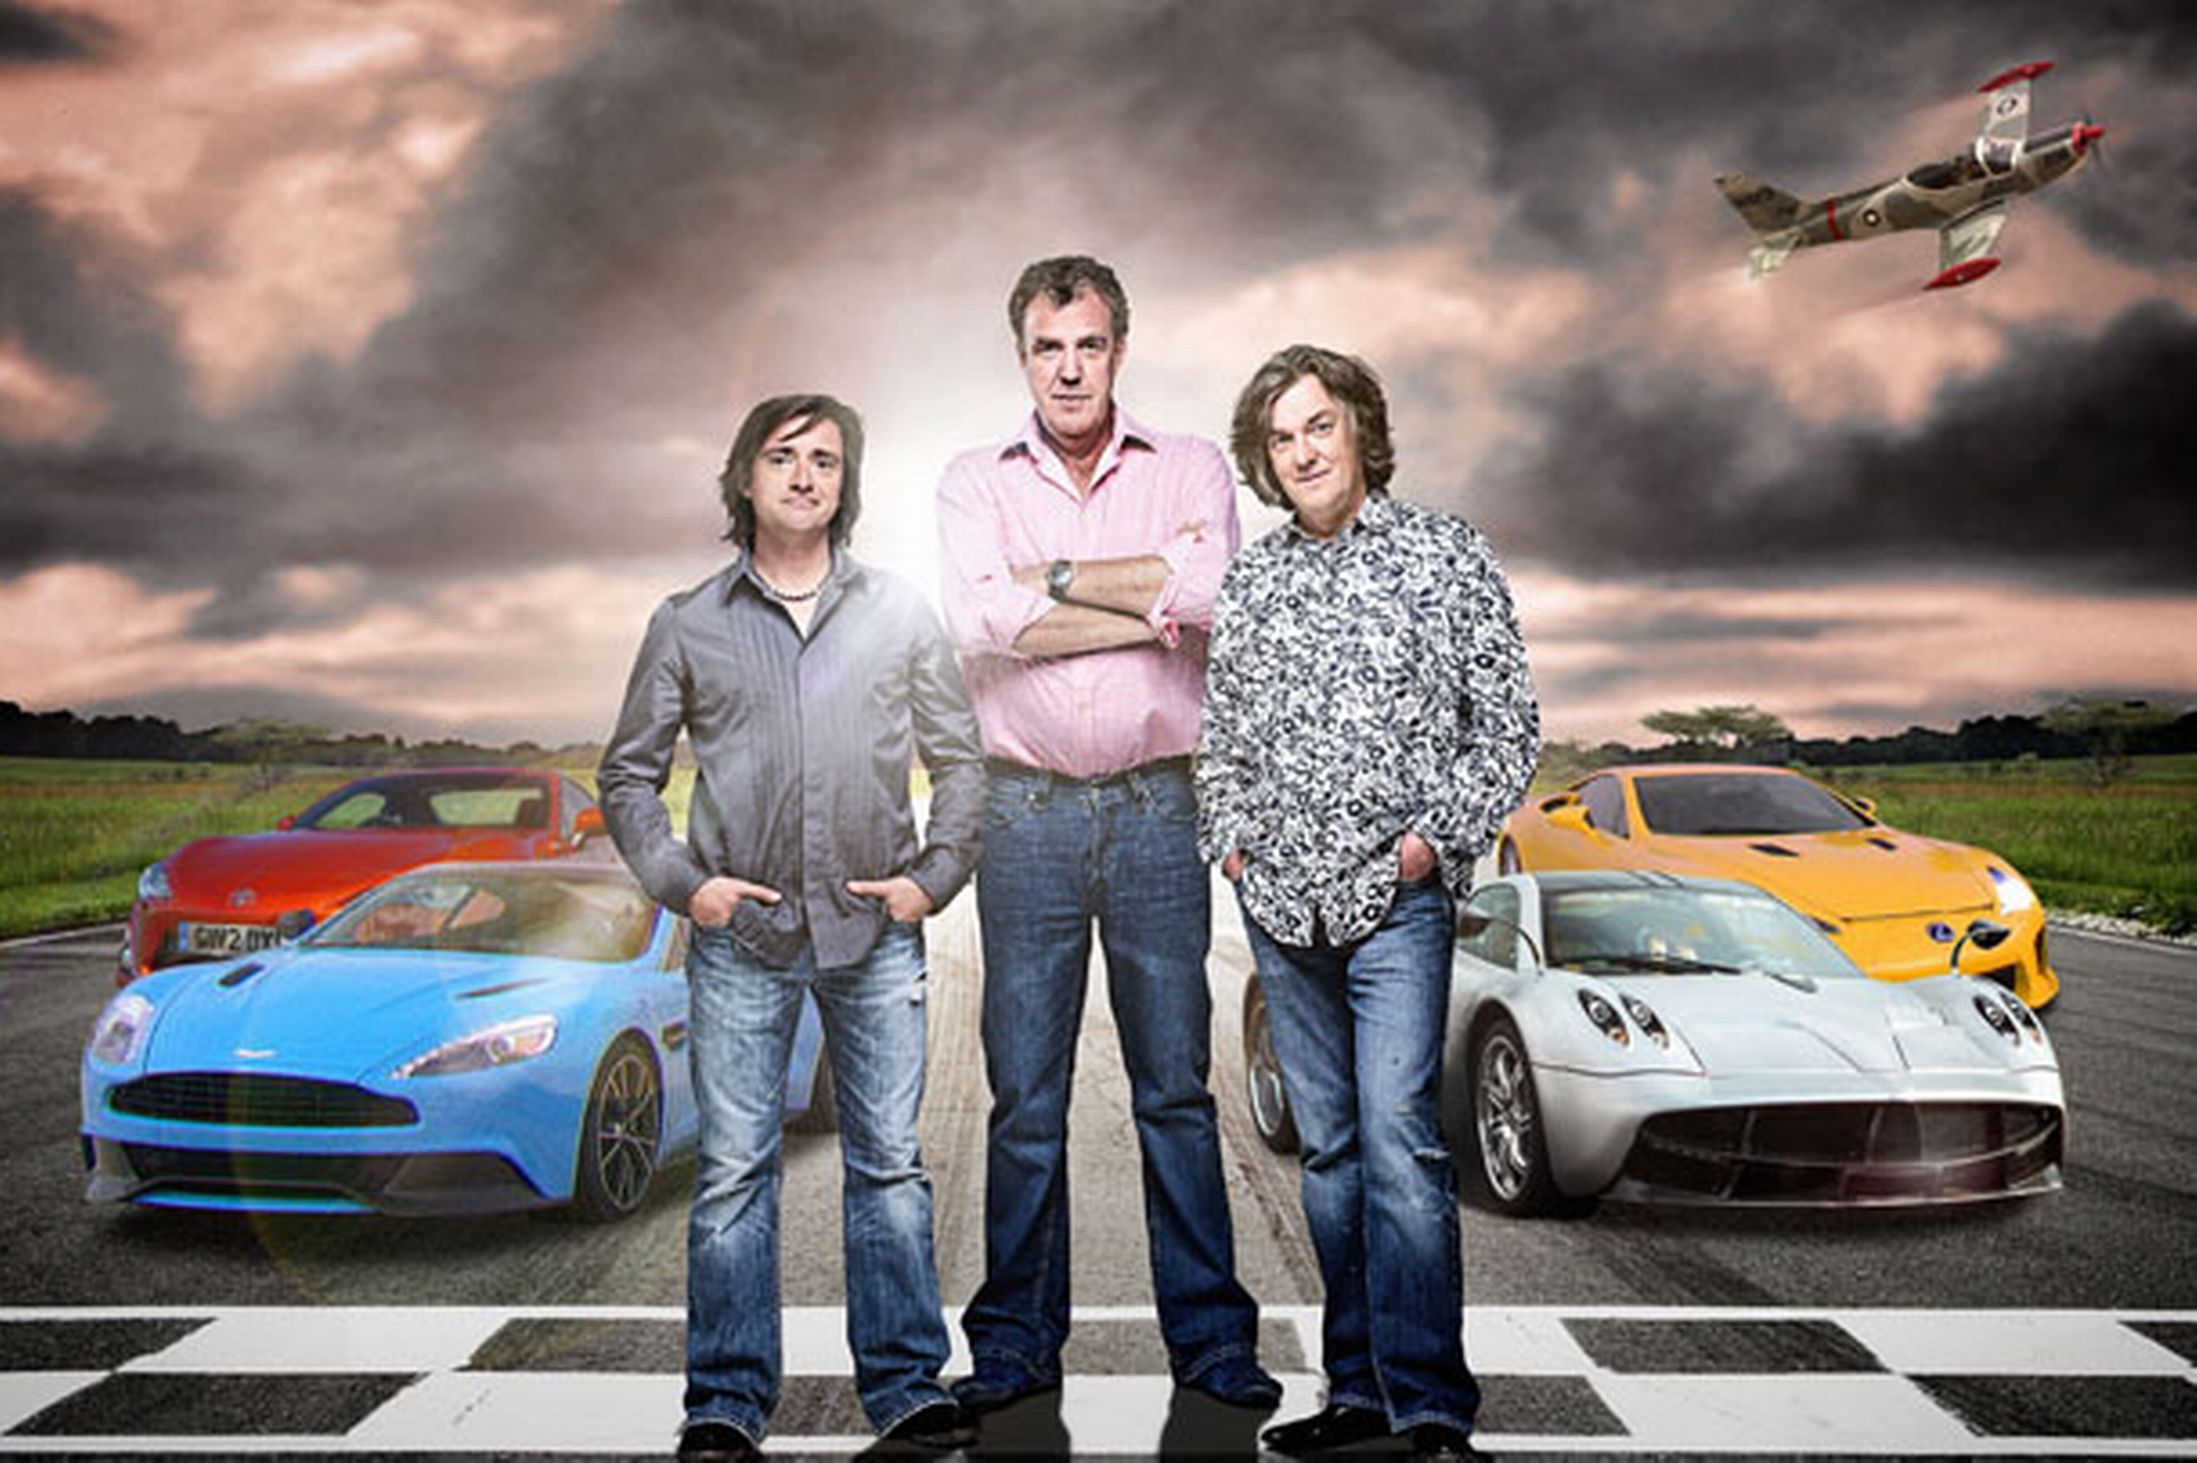 77+] Top Gear Wallpapers - WallpaperSafari